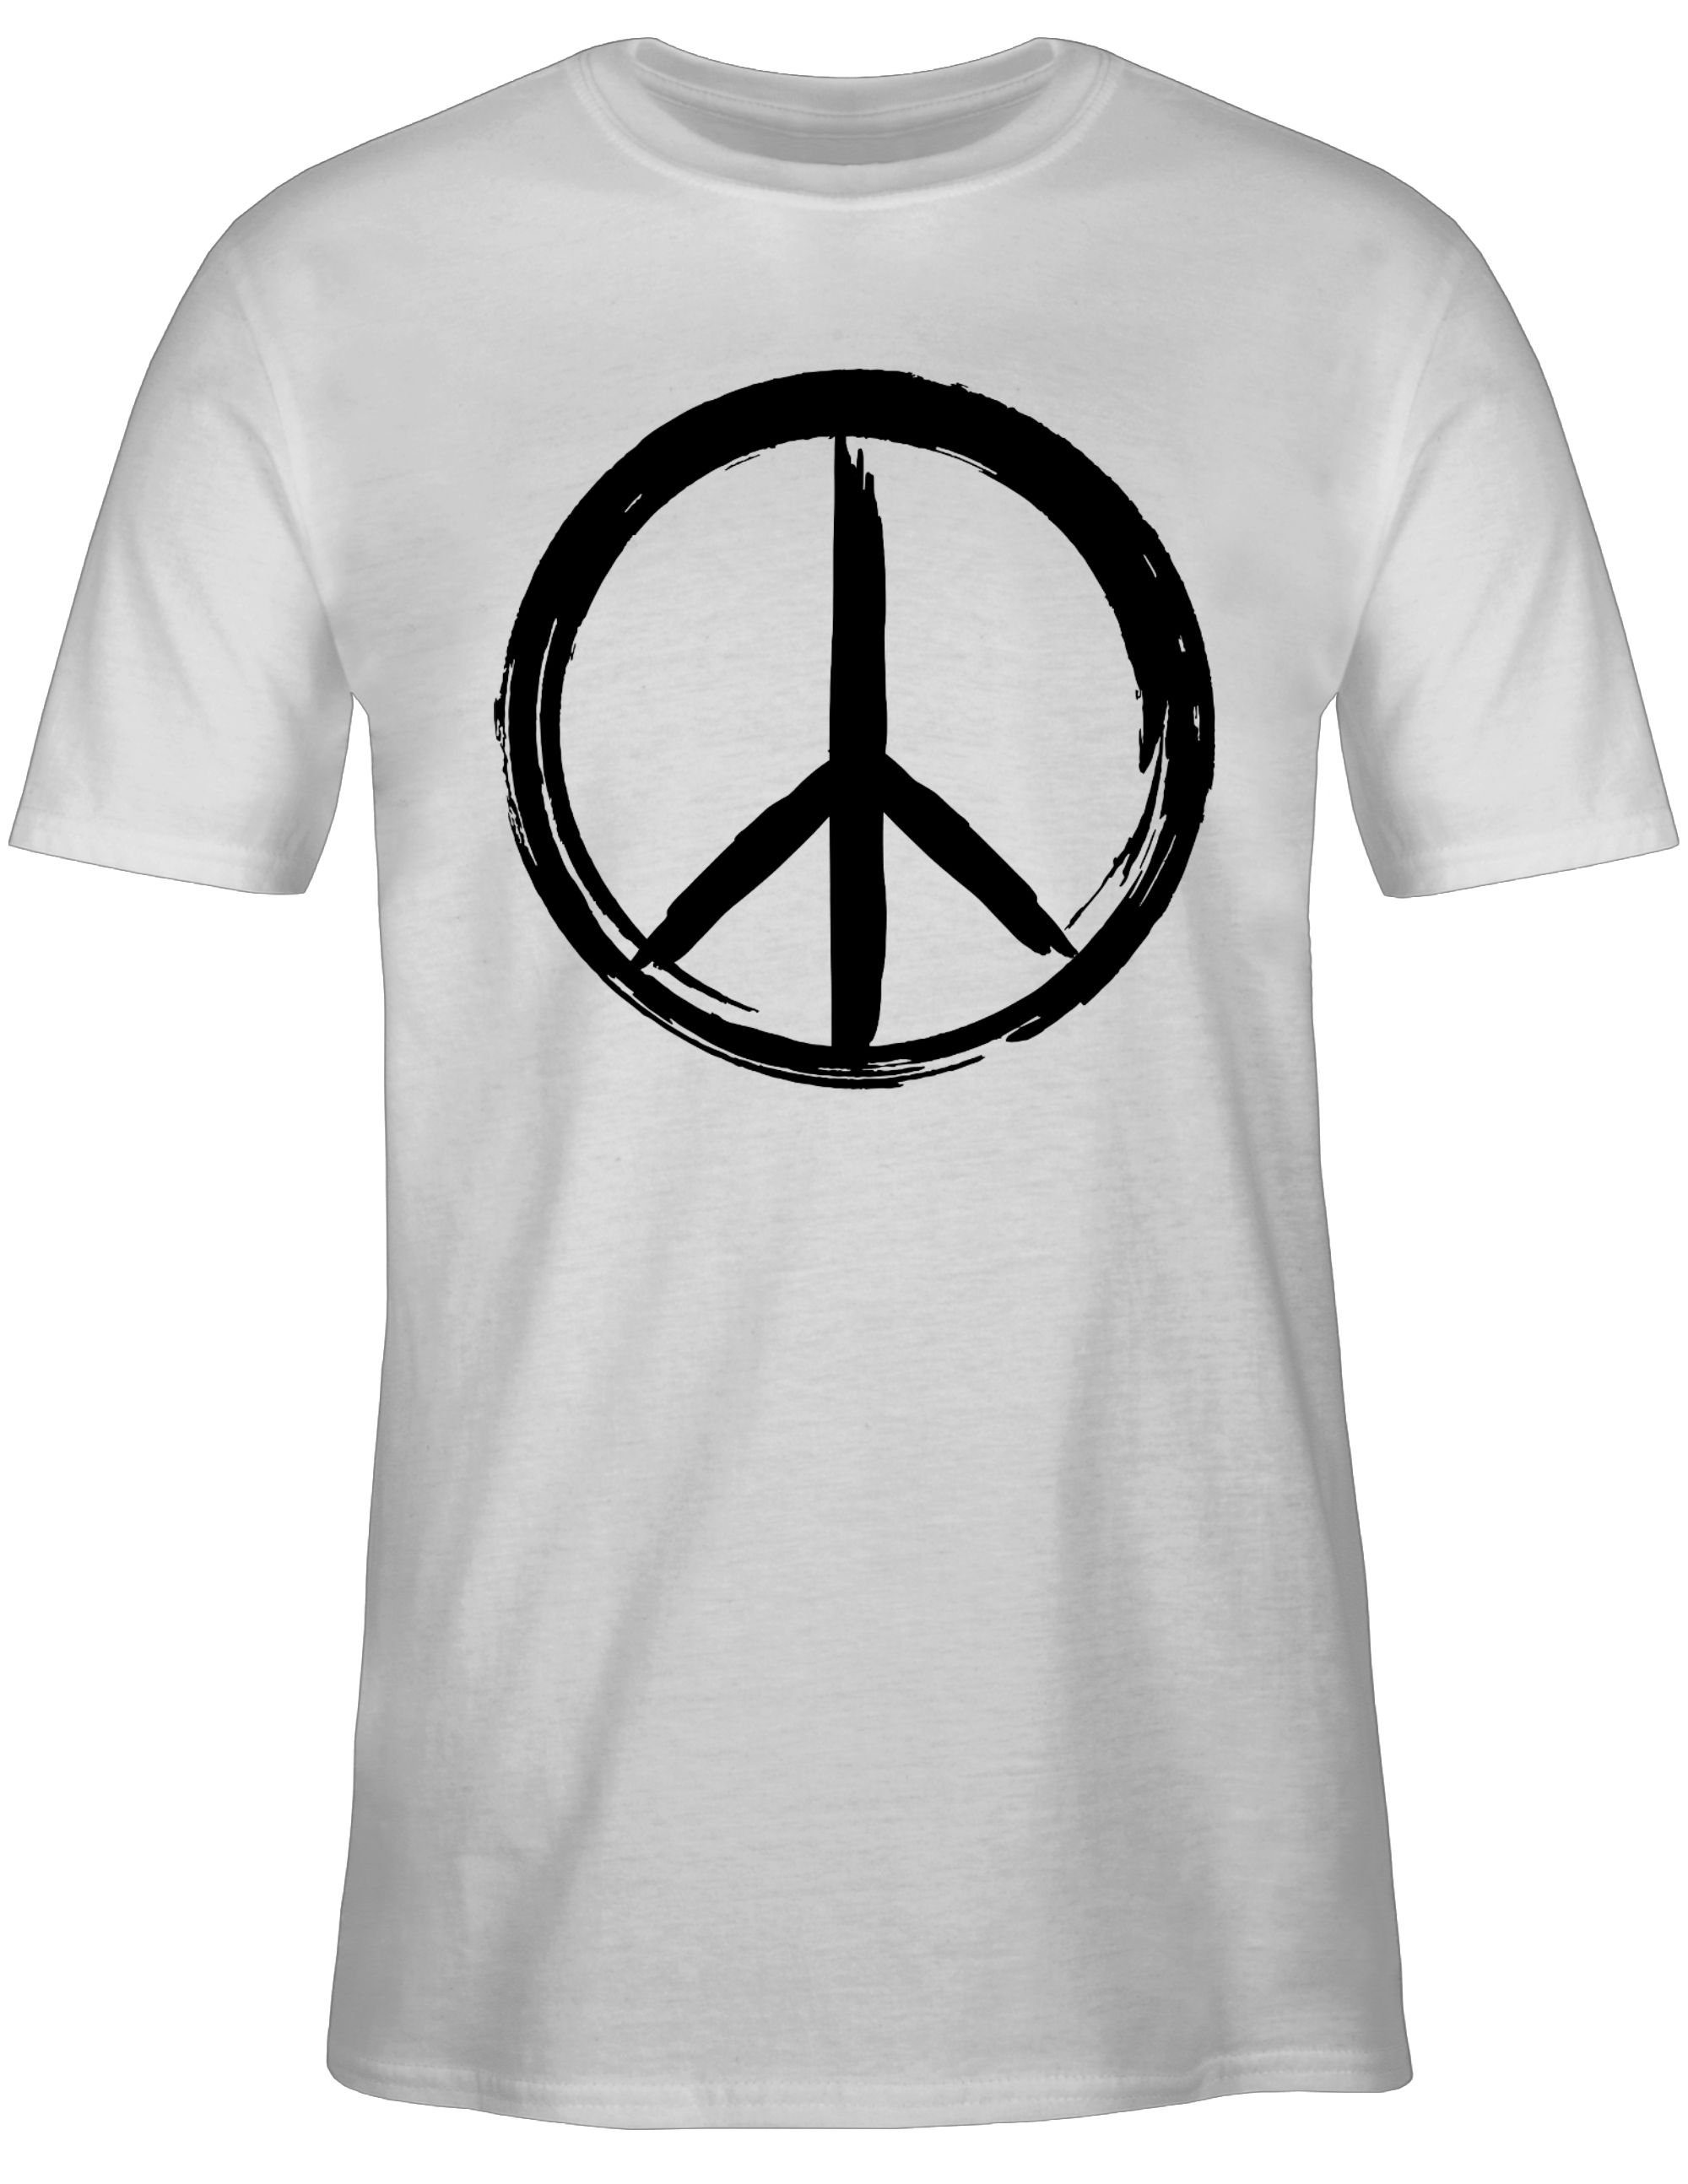 Peace - 1 Shirtracer Statement T-Shirt Sprüche schwarz Zeichen Weiß Pinsel Optik